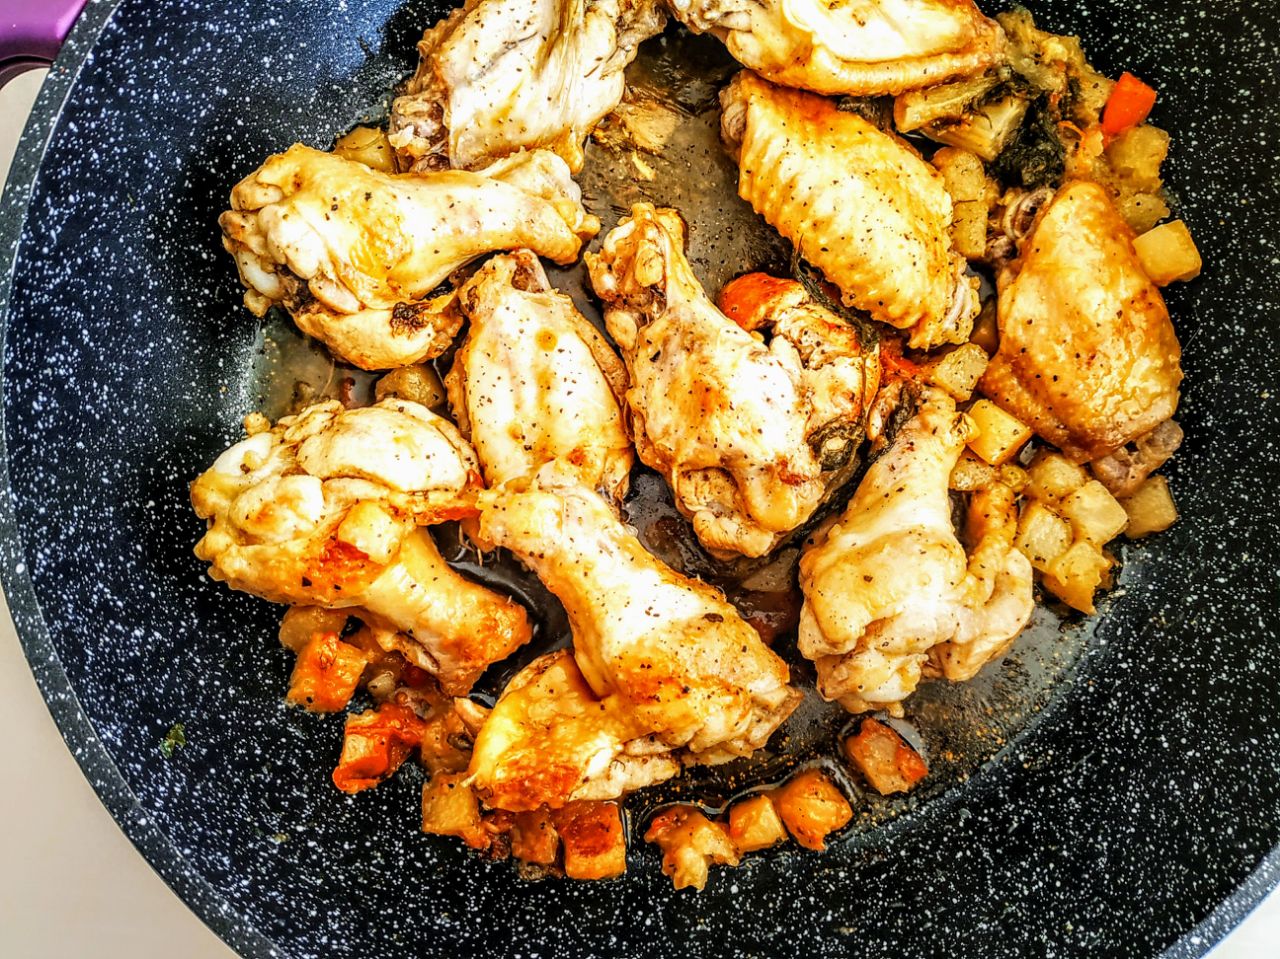 Secondi piatti a base di carne: coscette di pollo ruspante in padella con patate olio extravergine di oliva e pepe senza burro!